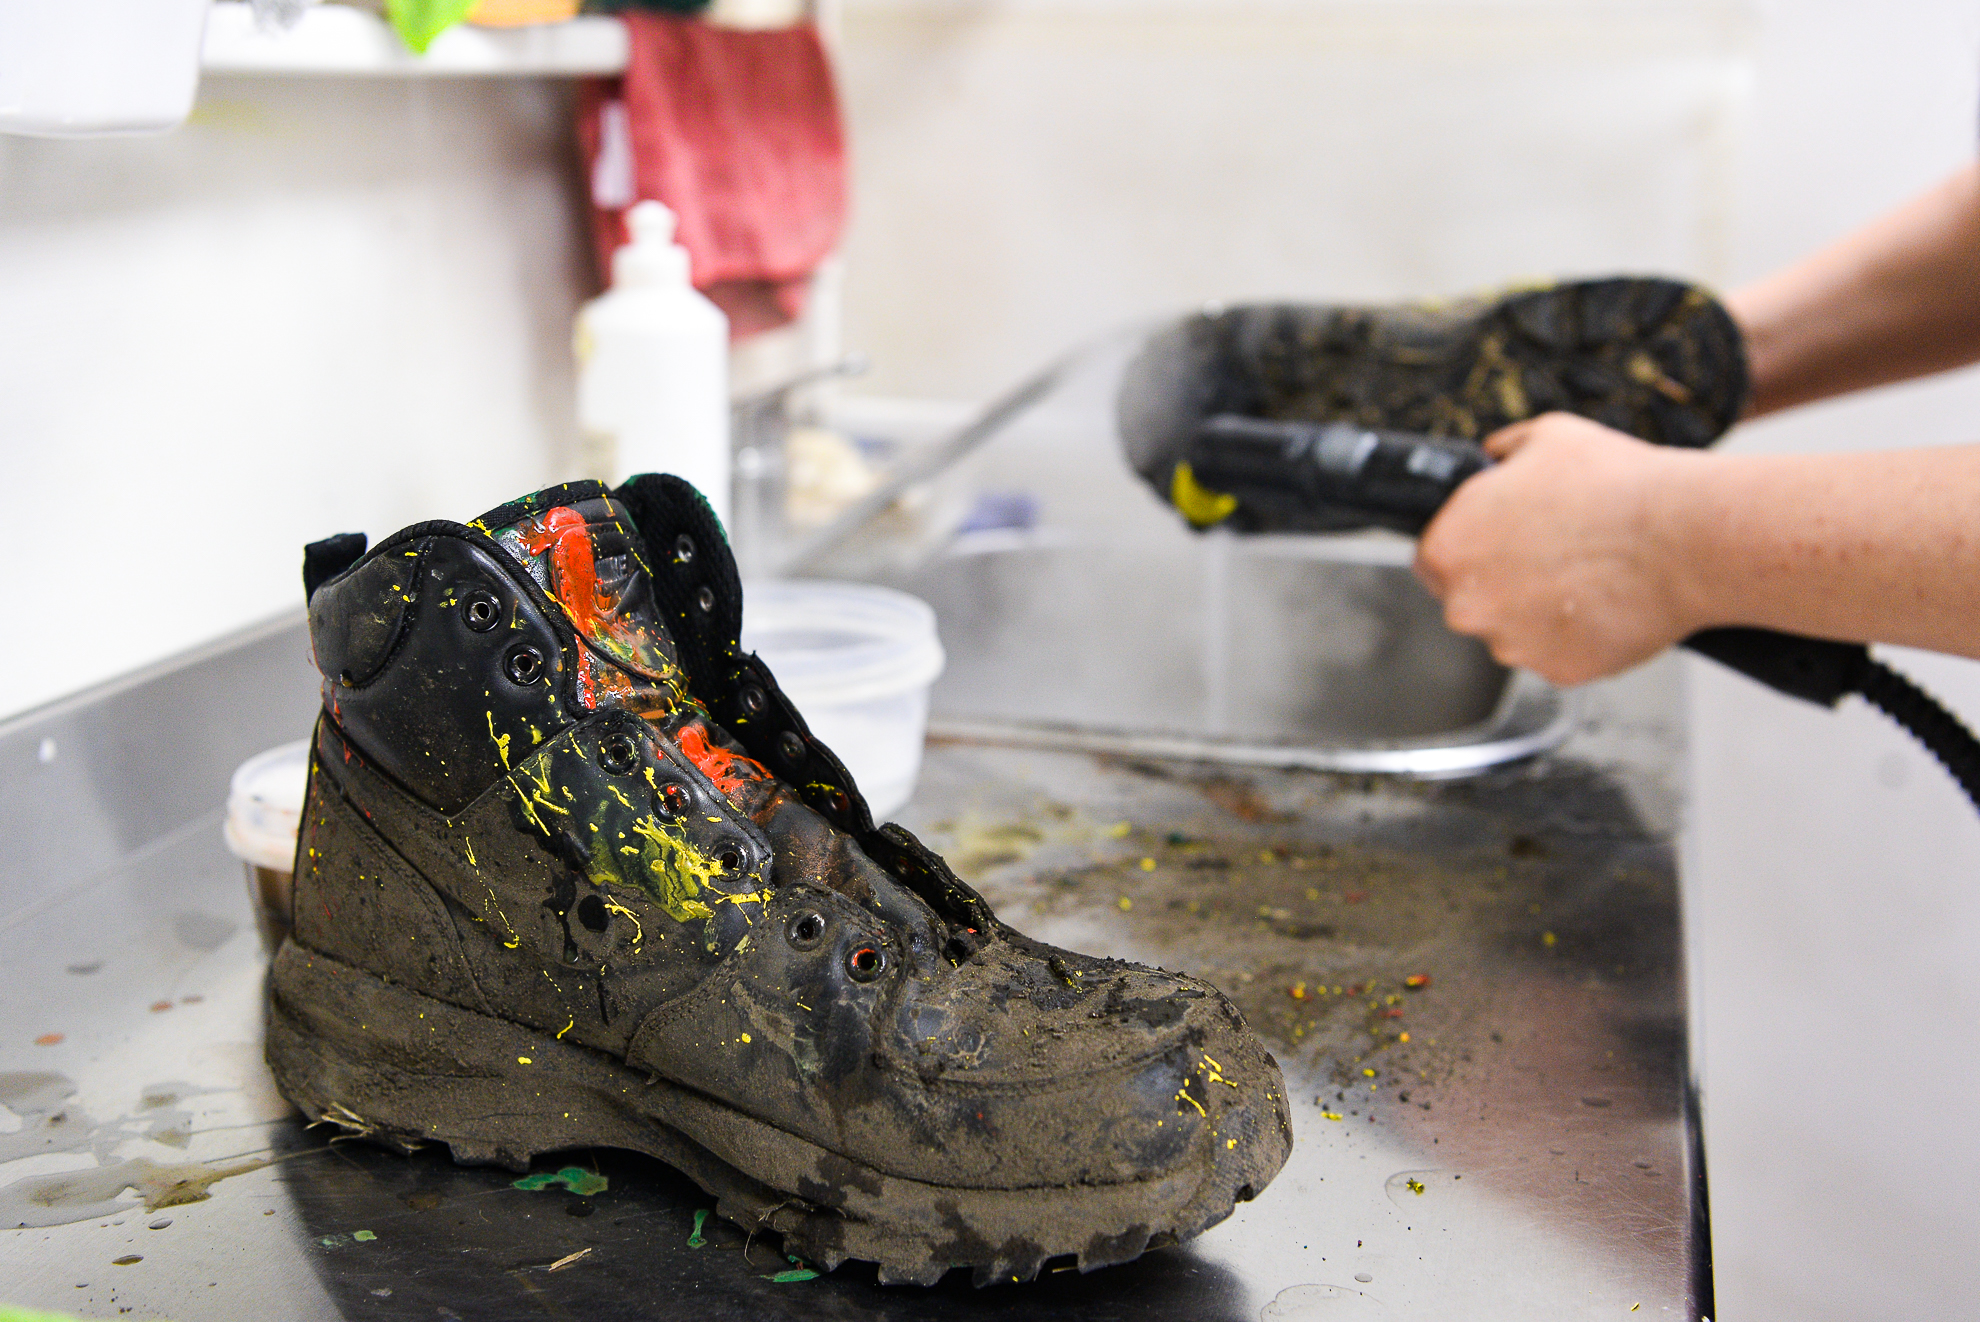 Комплексная чистка кожаной обуви включает глубокое очищение внутри и снаружи, дезинфекцию и покрытие водоотталкивающим составом